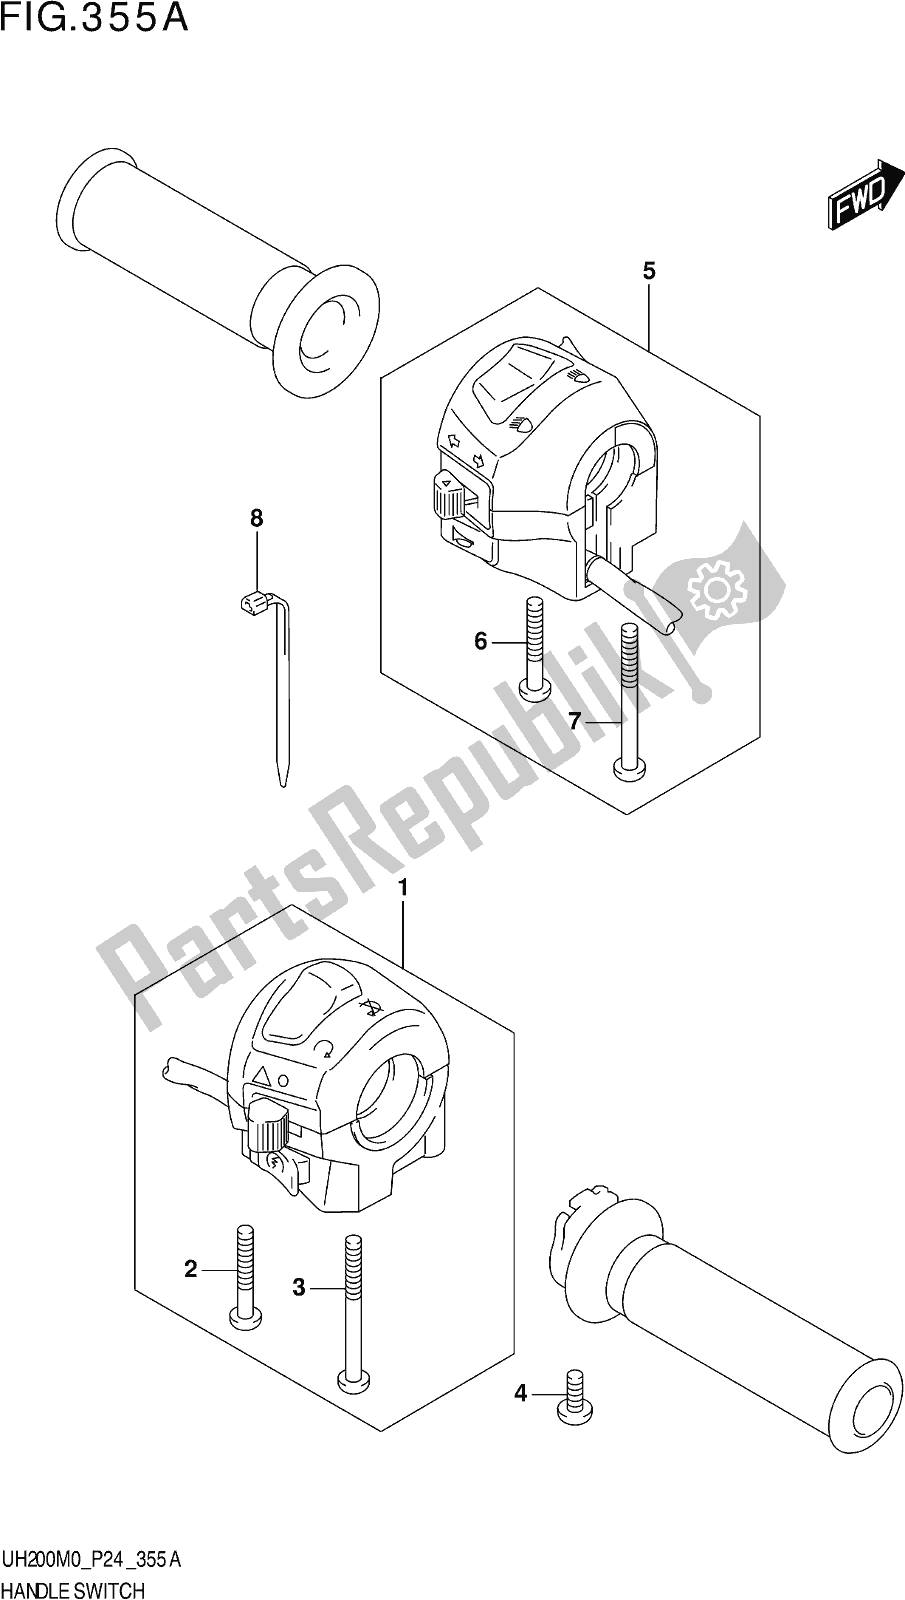 Alle onderdelen voor de Fig. 355a Handle Switch van de Suzuki UH 200 2020